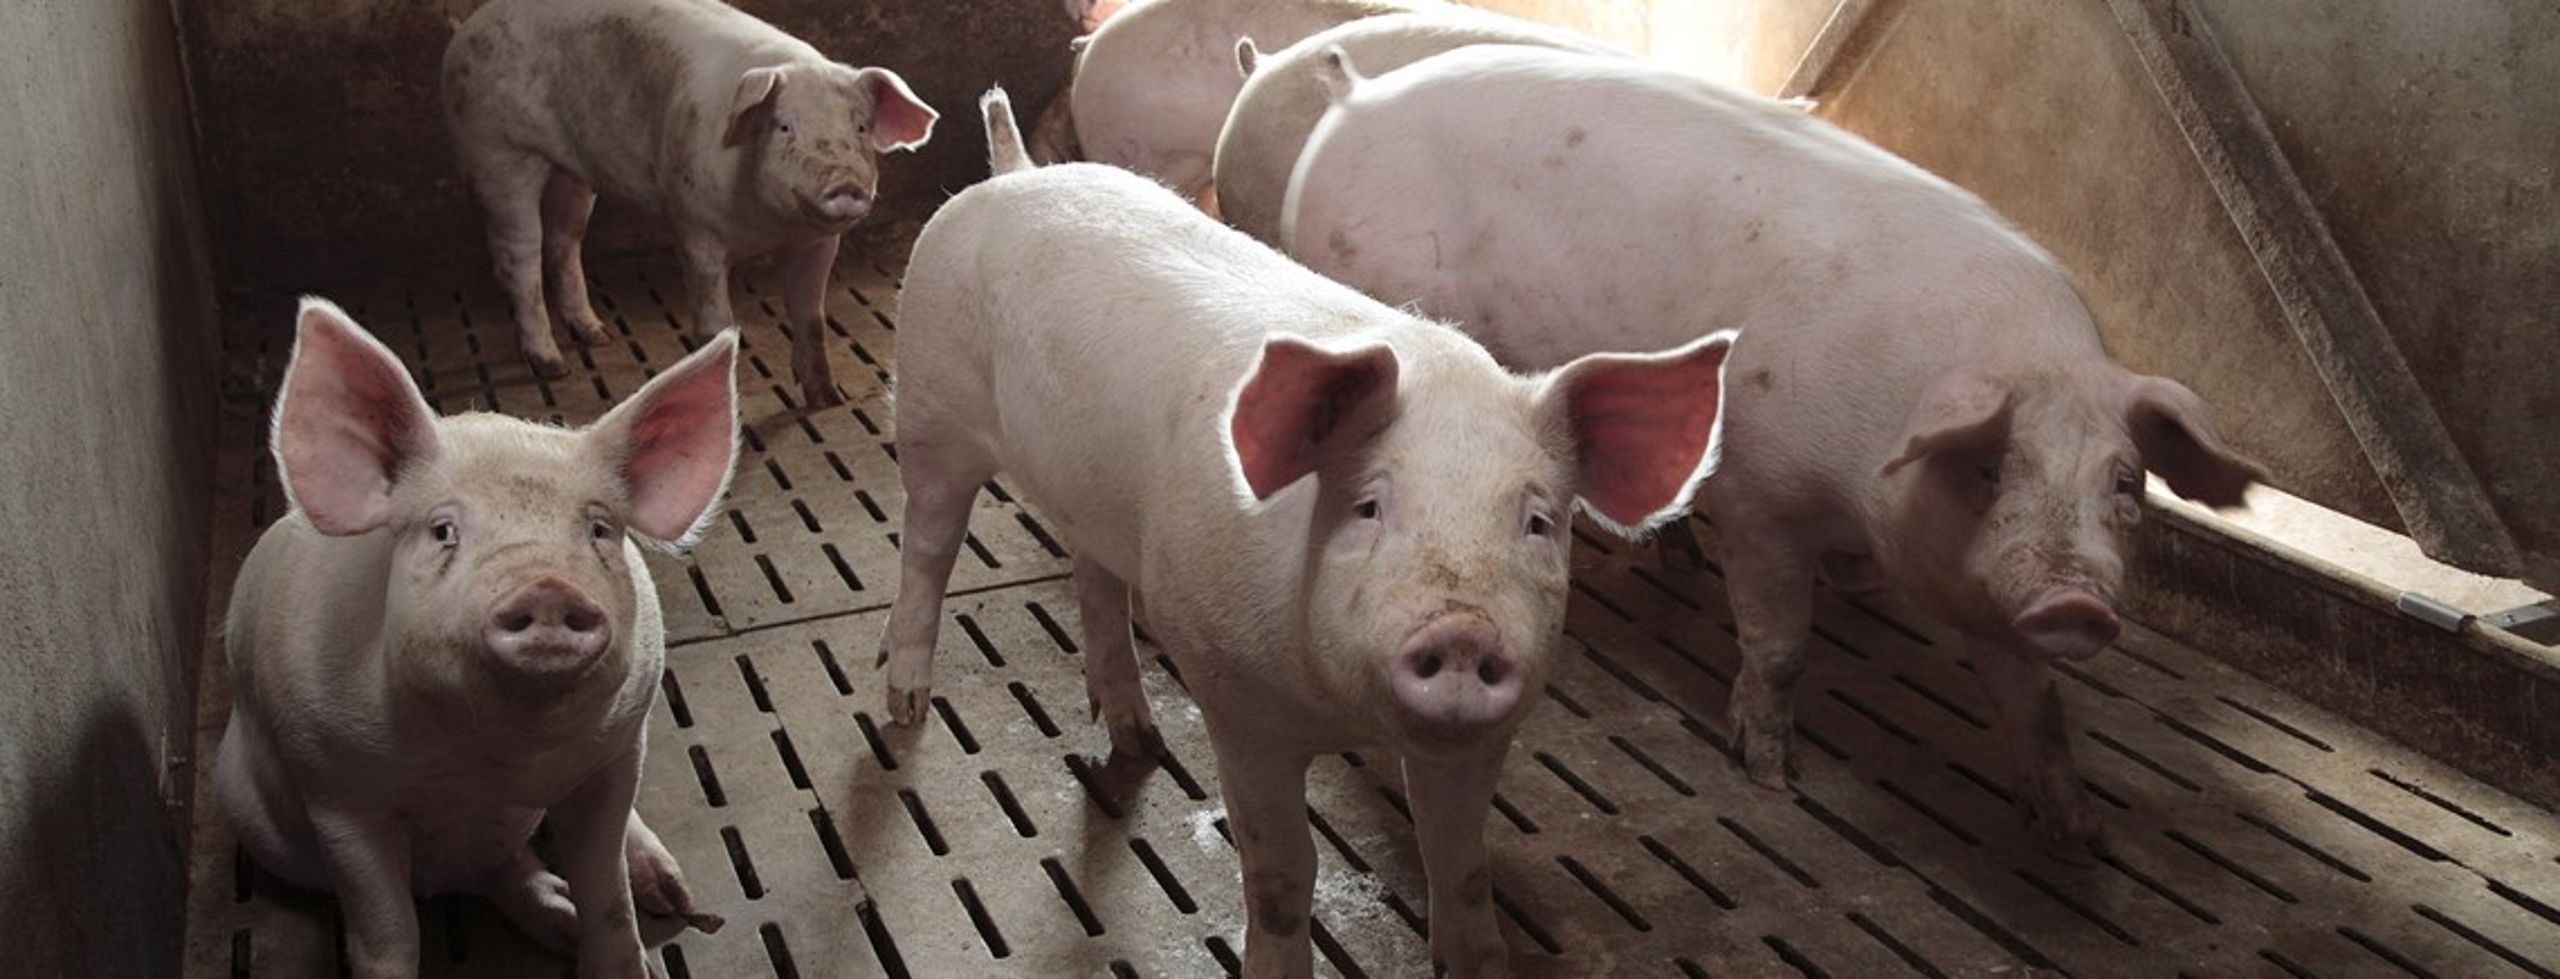 I Norge har man saneret svinebesætninger, der er testet positive for MRSA. Det afviser man stadig at gøre i Danmark.